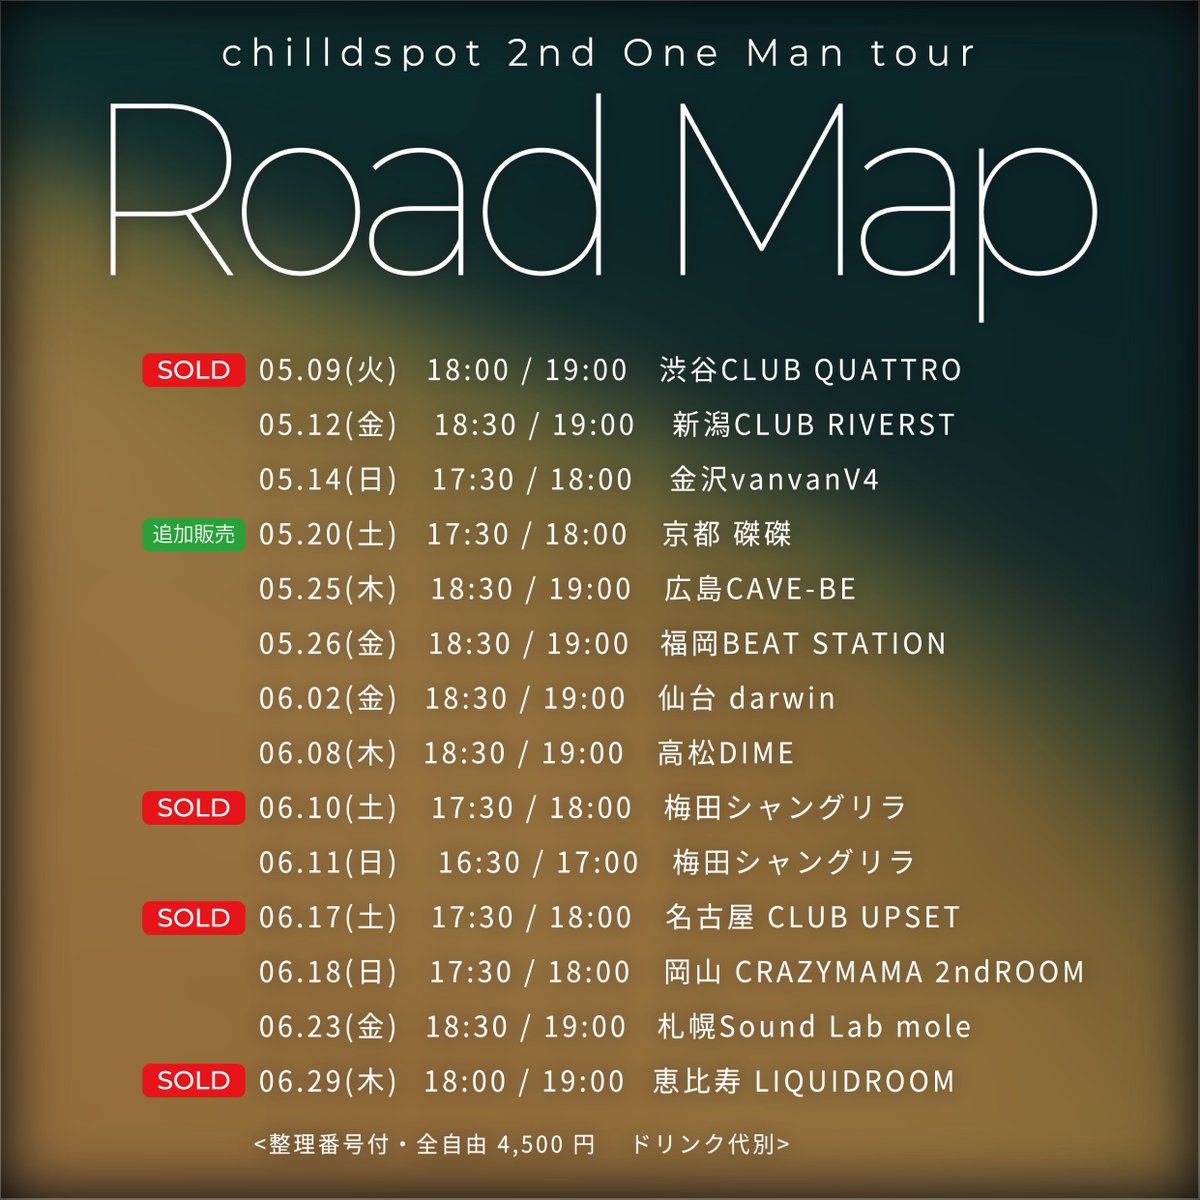 🎤LIVE🎤
2nd One Man tour 'Road Map'

＜ツアーFINAL＞
6.29(木) 恵比寿 LIQUIDROOM

追加チケットも全部SOLD OUT❗️
ありがとうございます🙏

各公演のチケットも残りわずか、
ご購入はお早めに🎫

▼チケット販売はこちら
fan.pia.jp/chilldspot/tic…

#chilldspot
#RoadMap